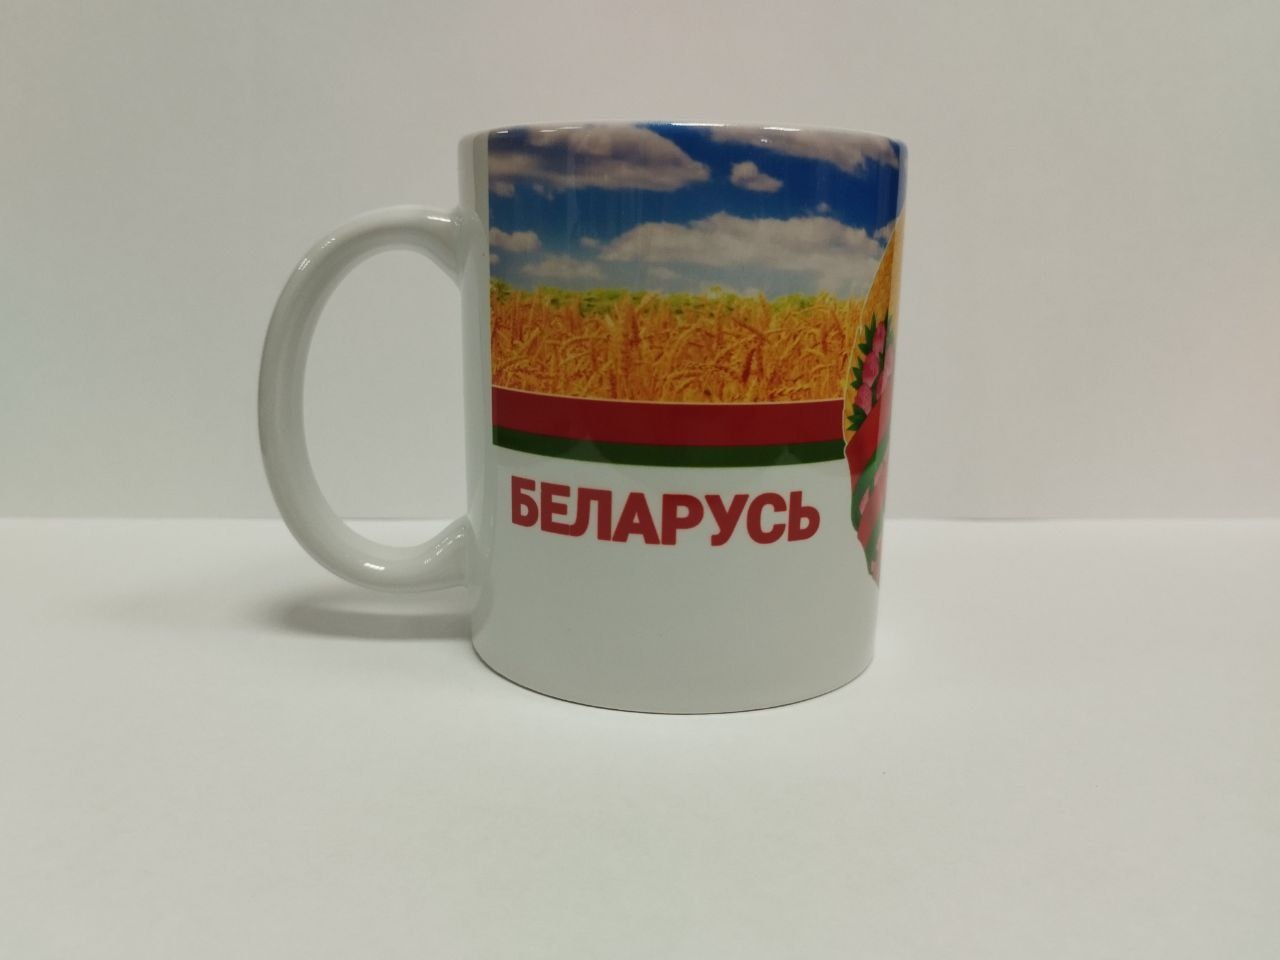 Купить Кружка с символикой Республики Беларусь - фото 1